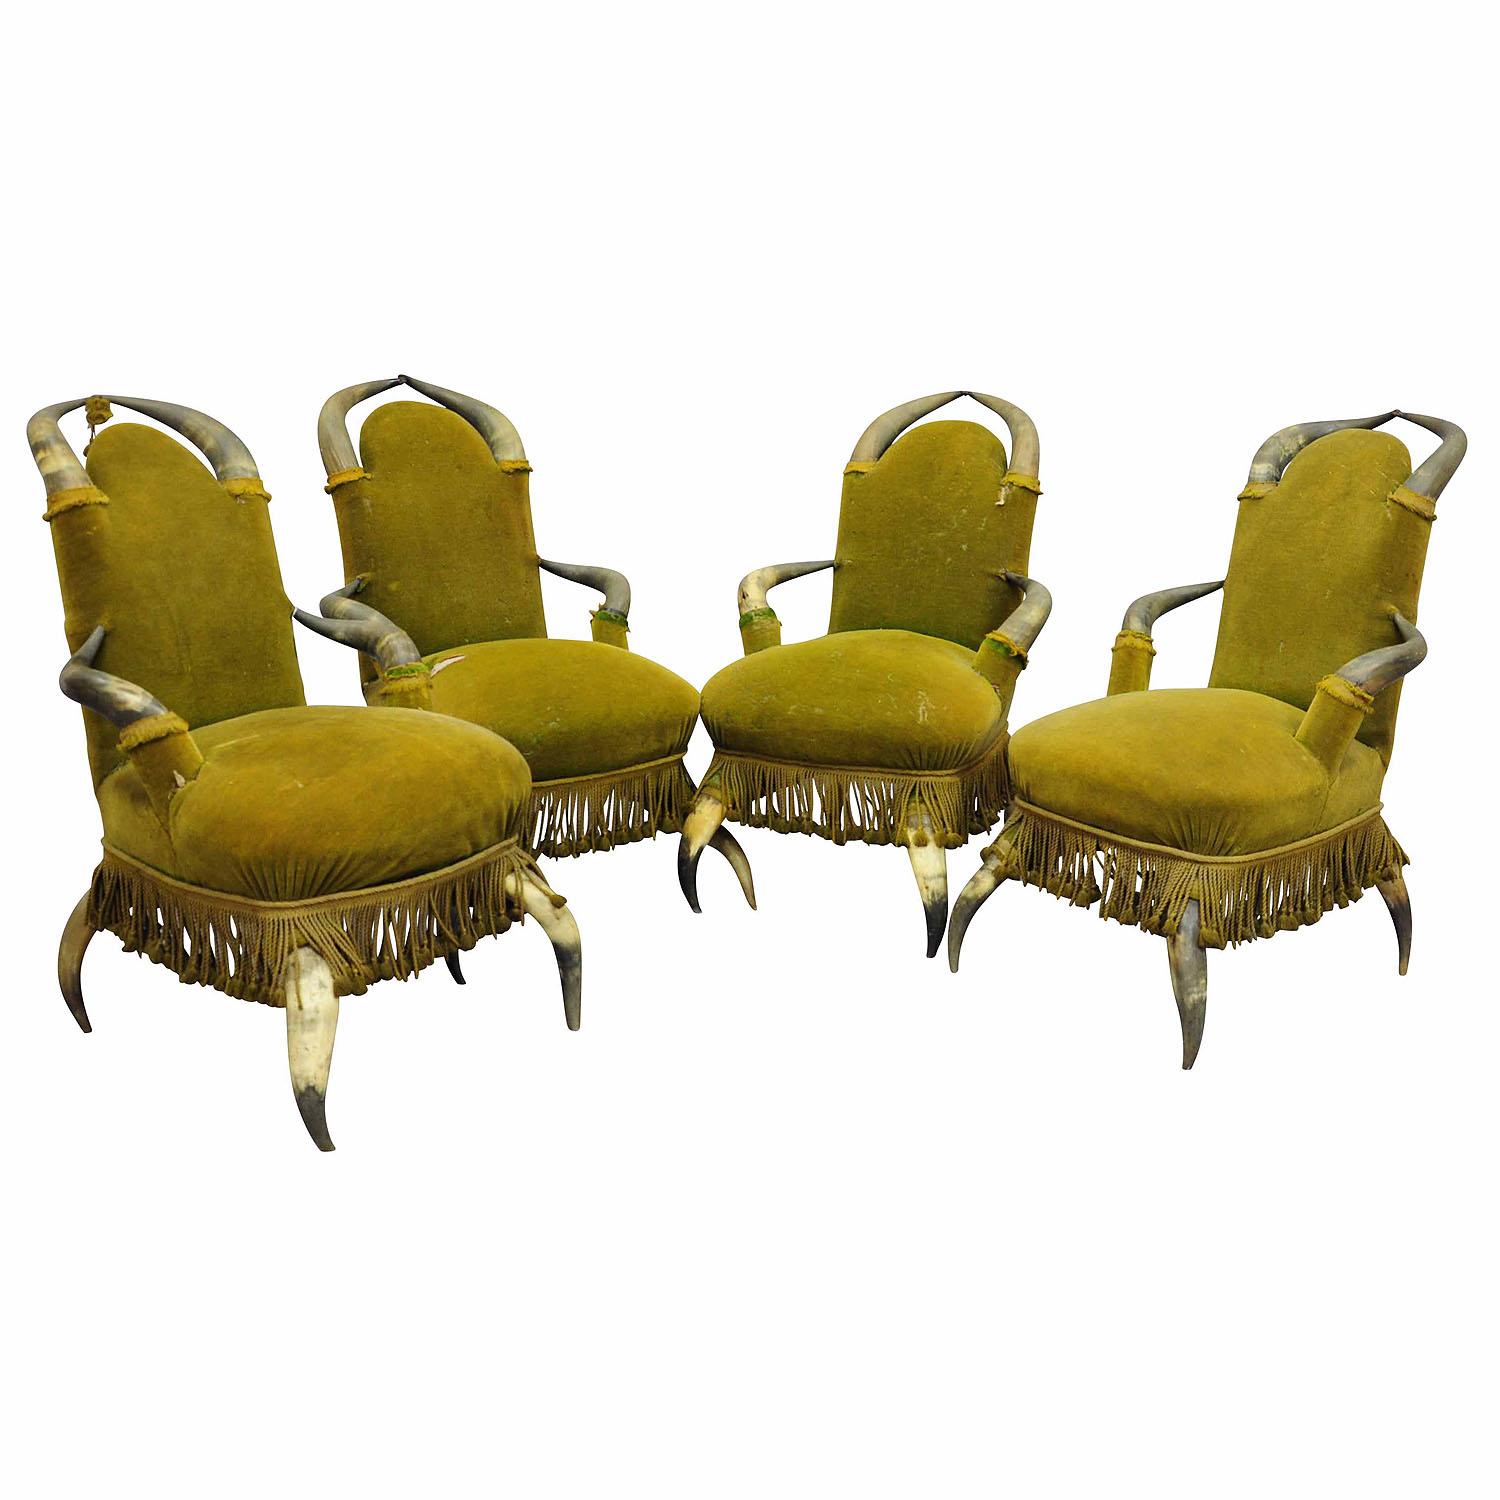 Quatre chaises anciennes en corne de taureau vers 1870

Un ensemble de quatre chaises anciennes en corne de taureau vers 1870, recouvertes de velours vert ancien qui doit être renouvelé (perd ses poils). Fabriqué en Autriche vers 1870.

Les meubles